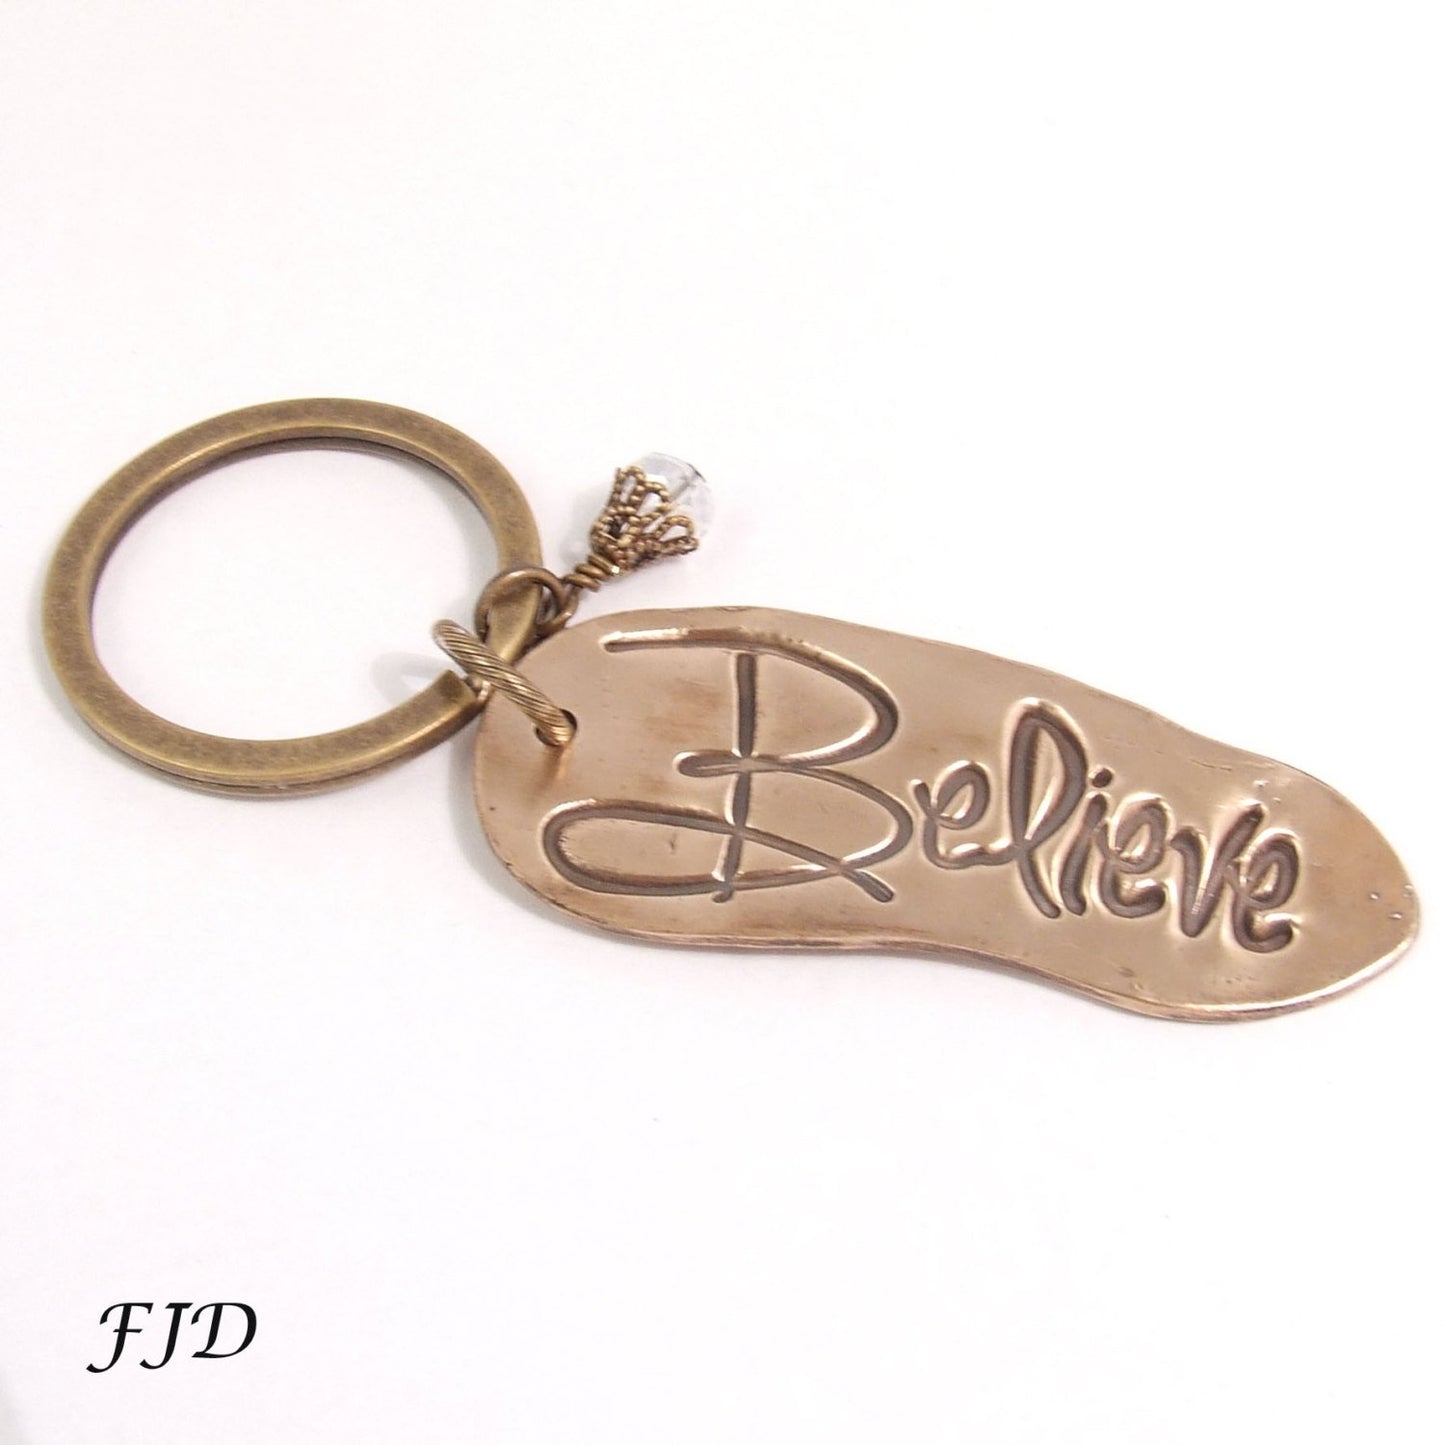 Hand-Stamped Bronze Keychain - Believe